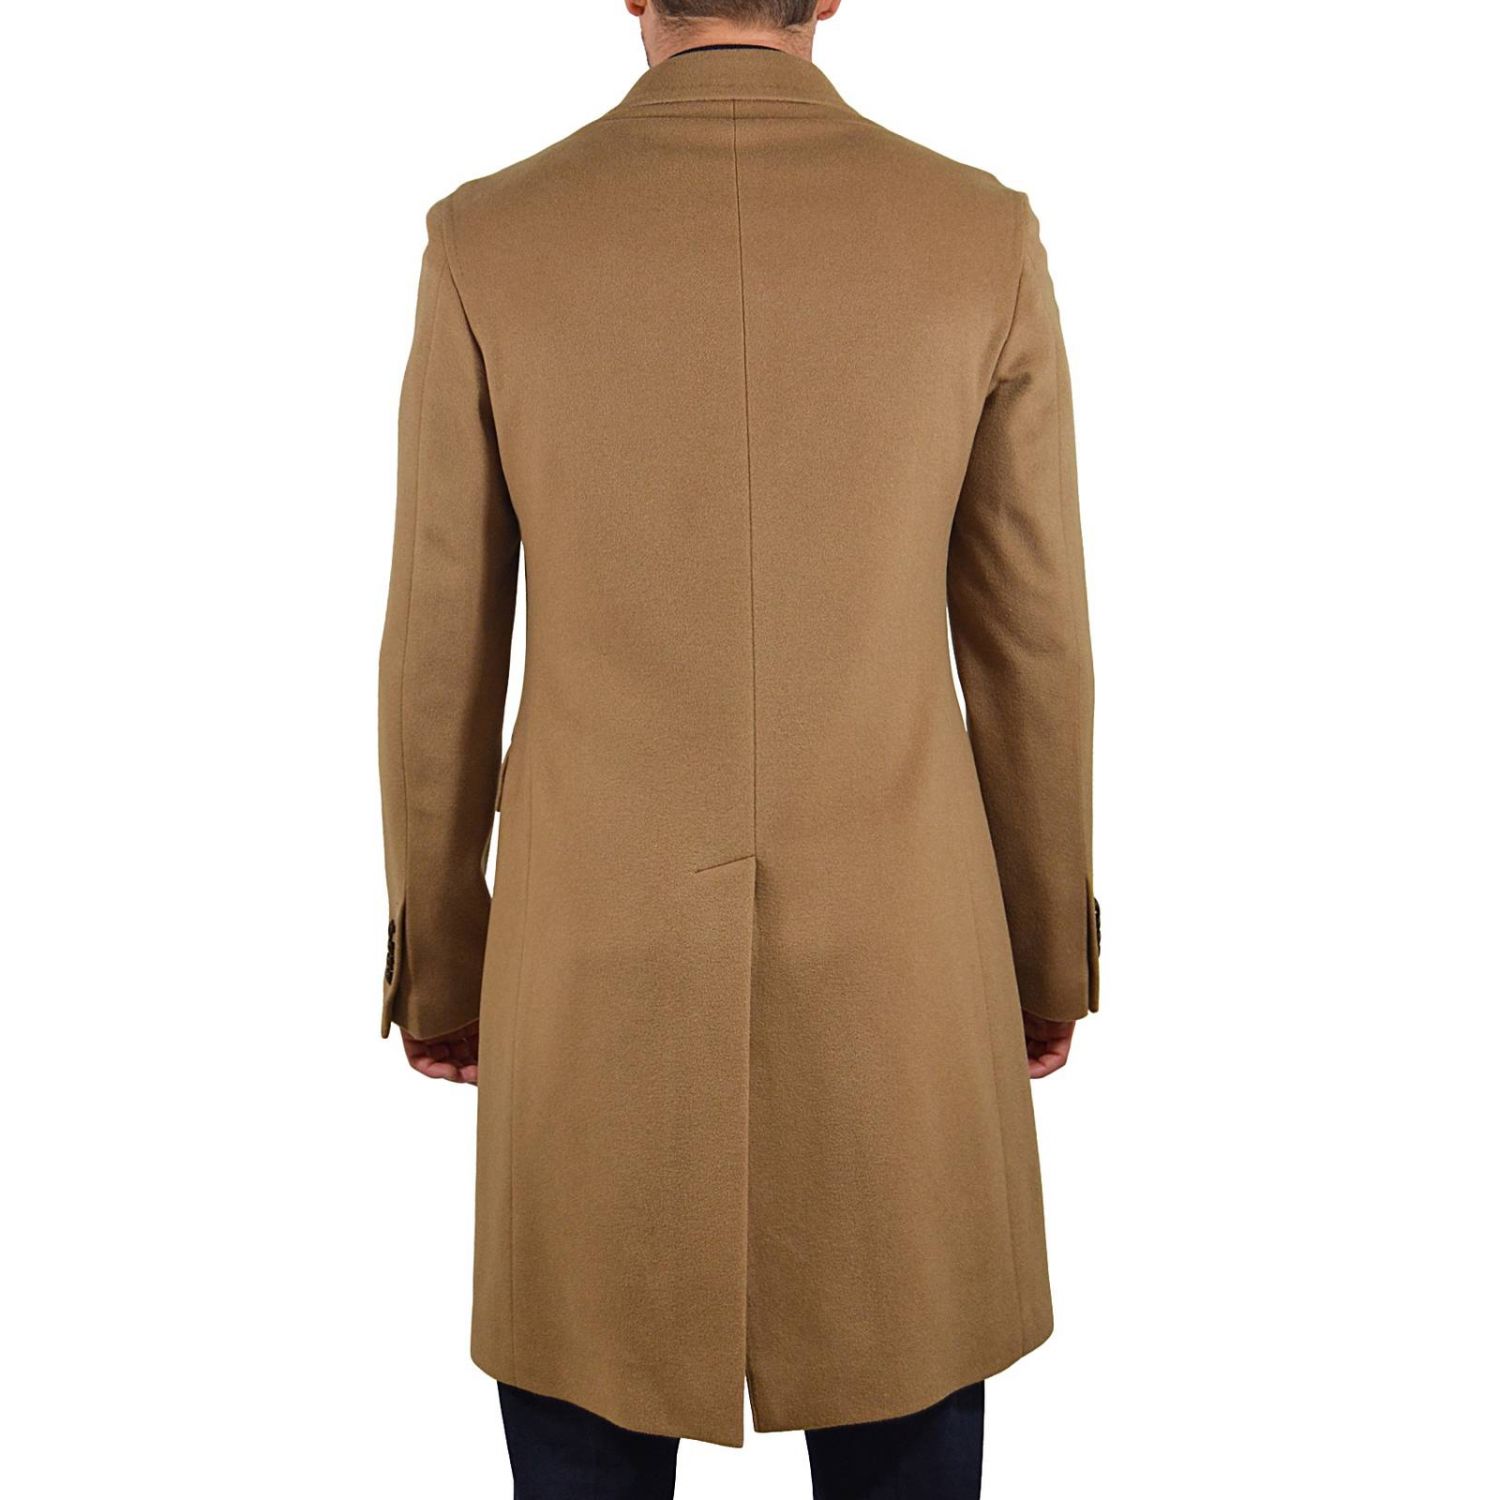 Tagliatore Outlet: Coat men | Coat Tagliatore Men Camel | Coat ...